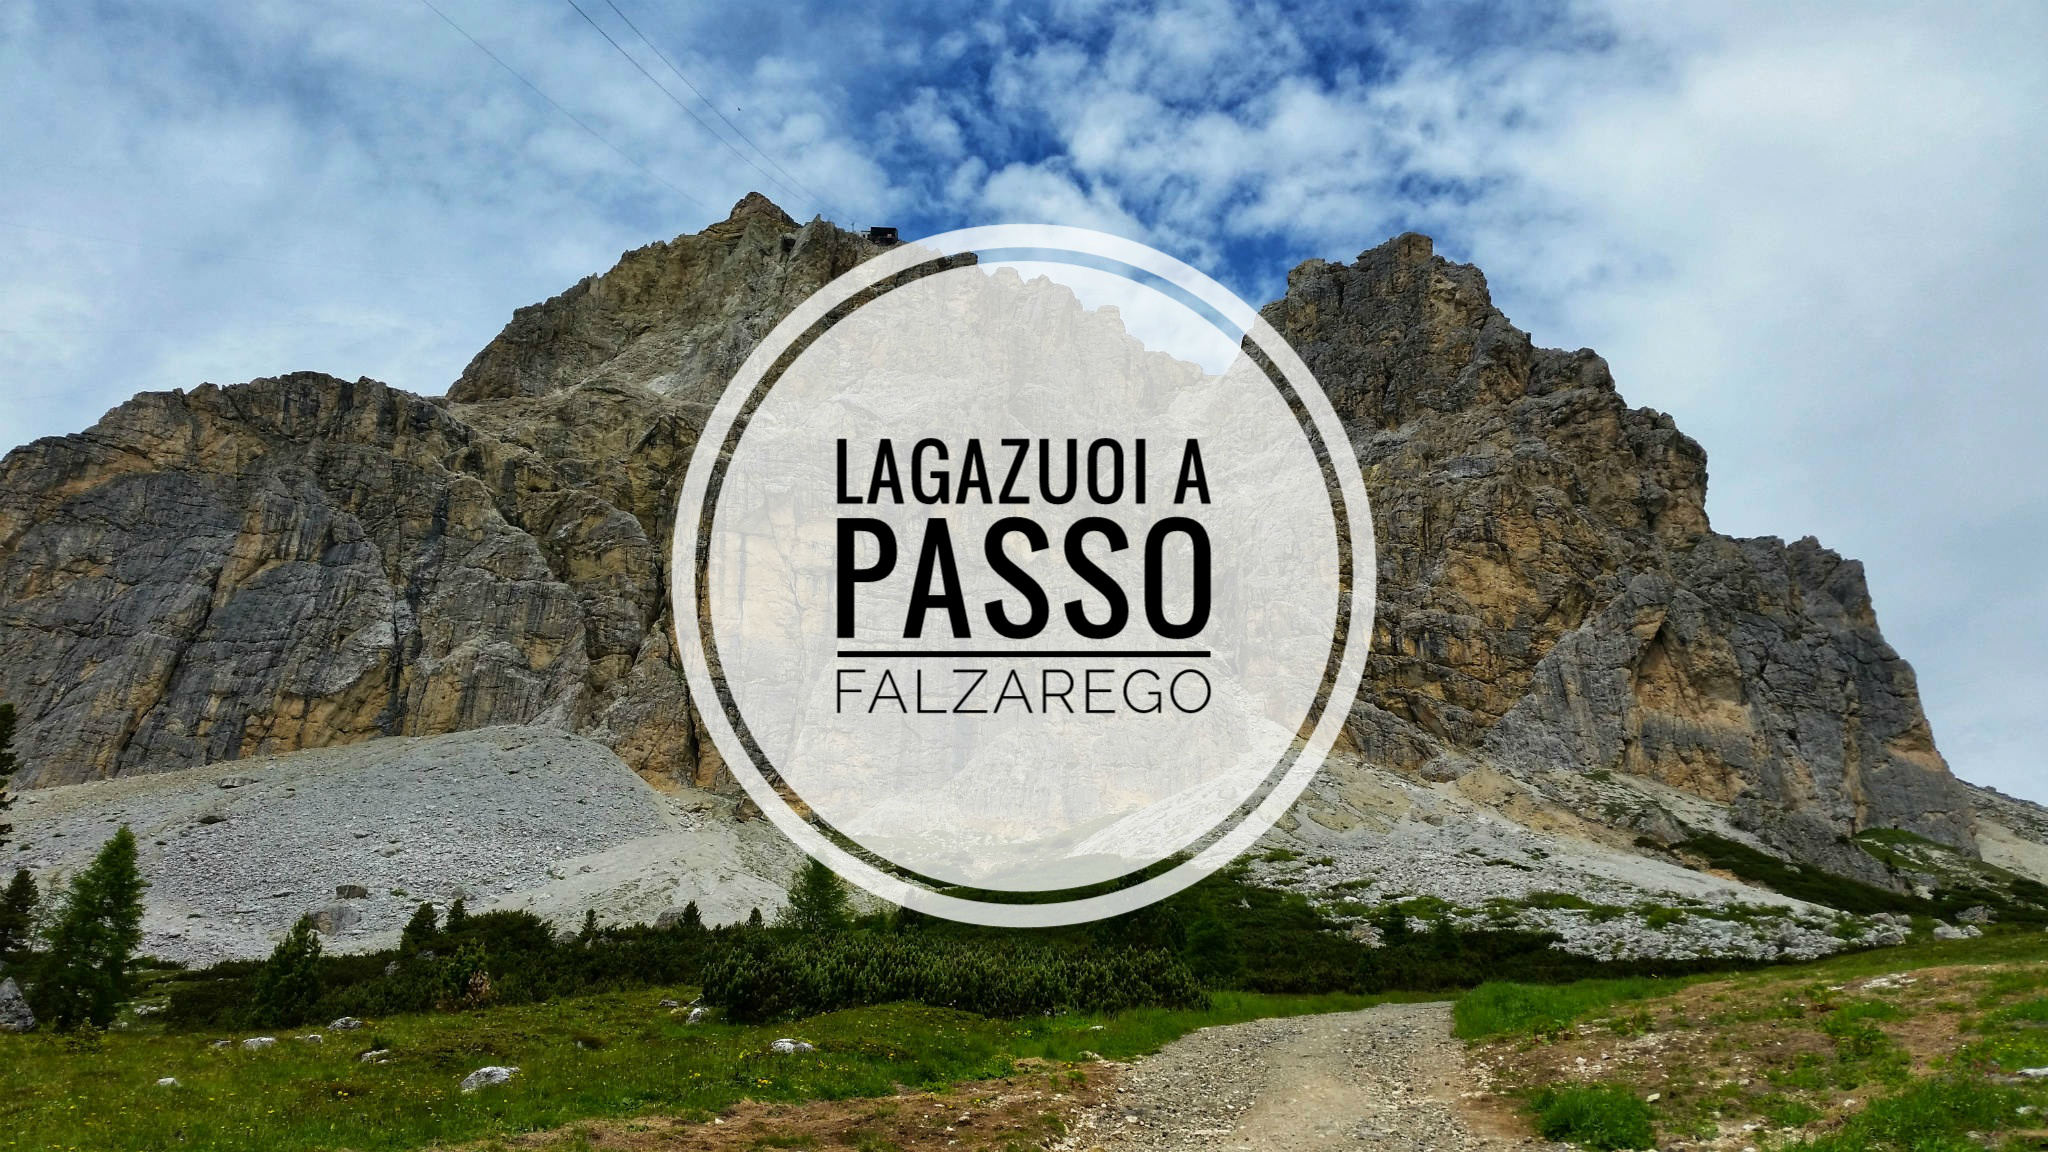 Lagazuoi a Passo Falzarego